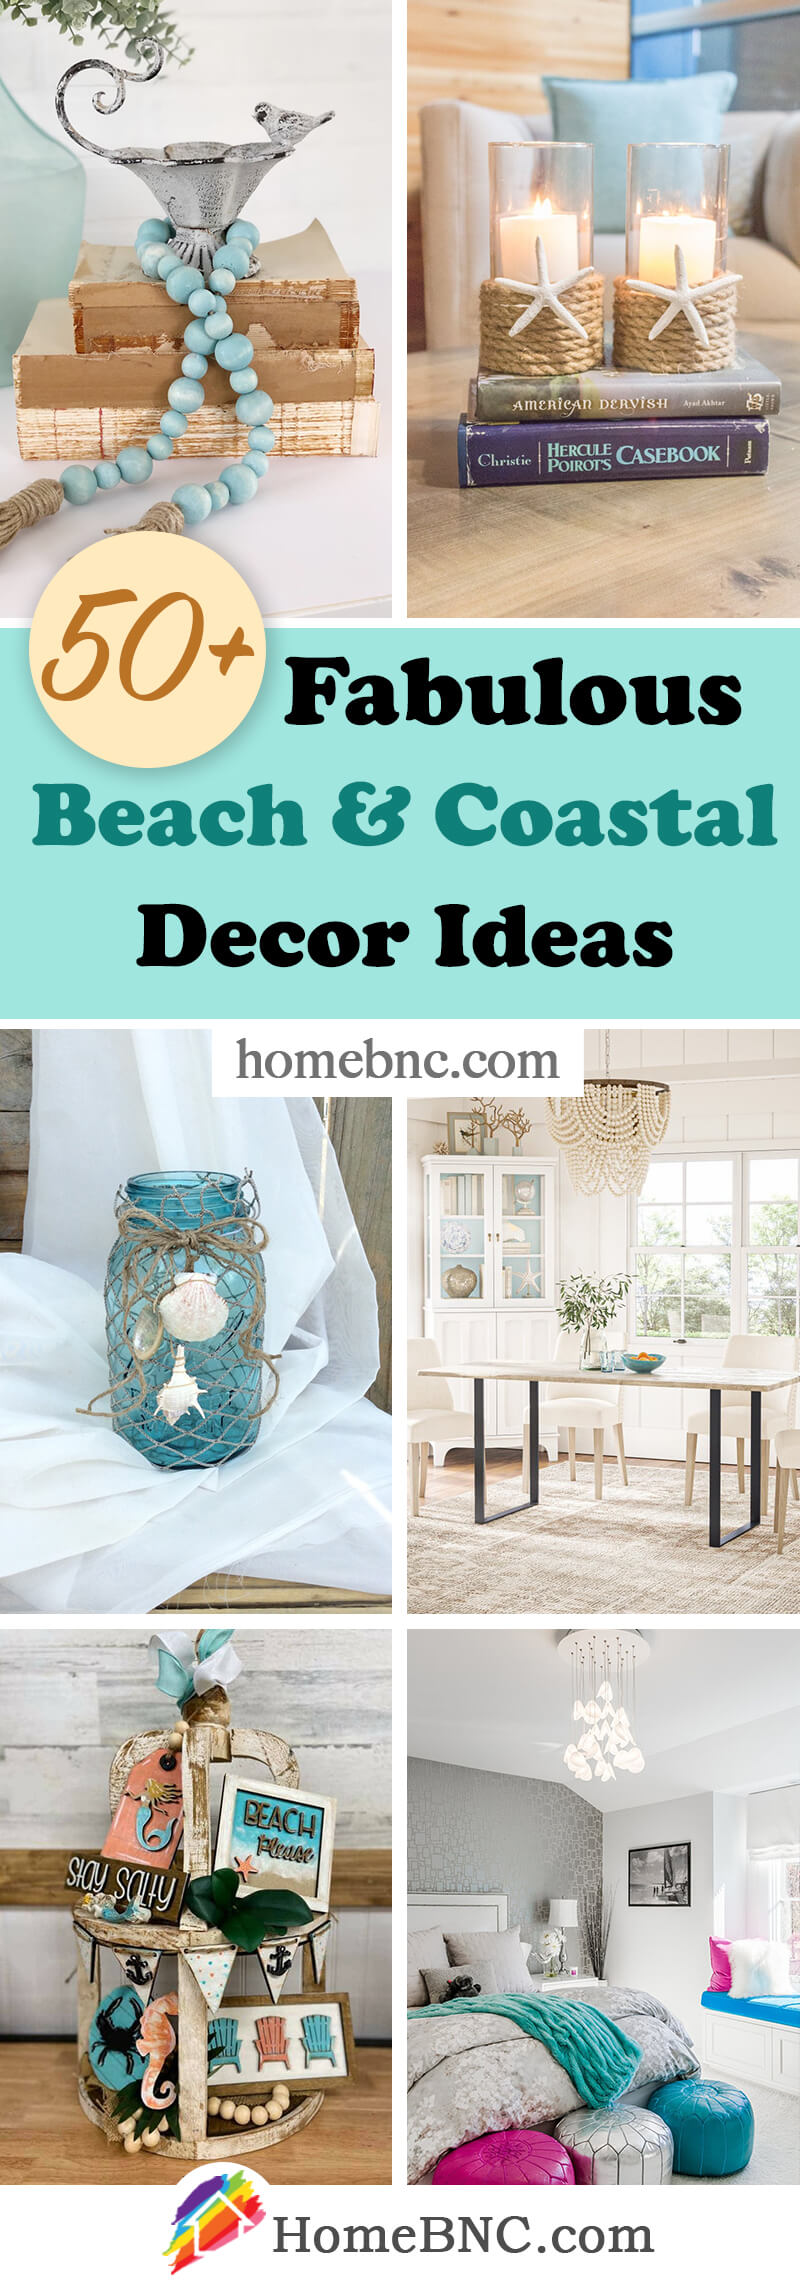 Beach and Coastal Decor Ideas